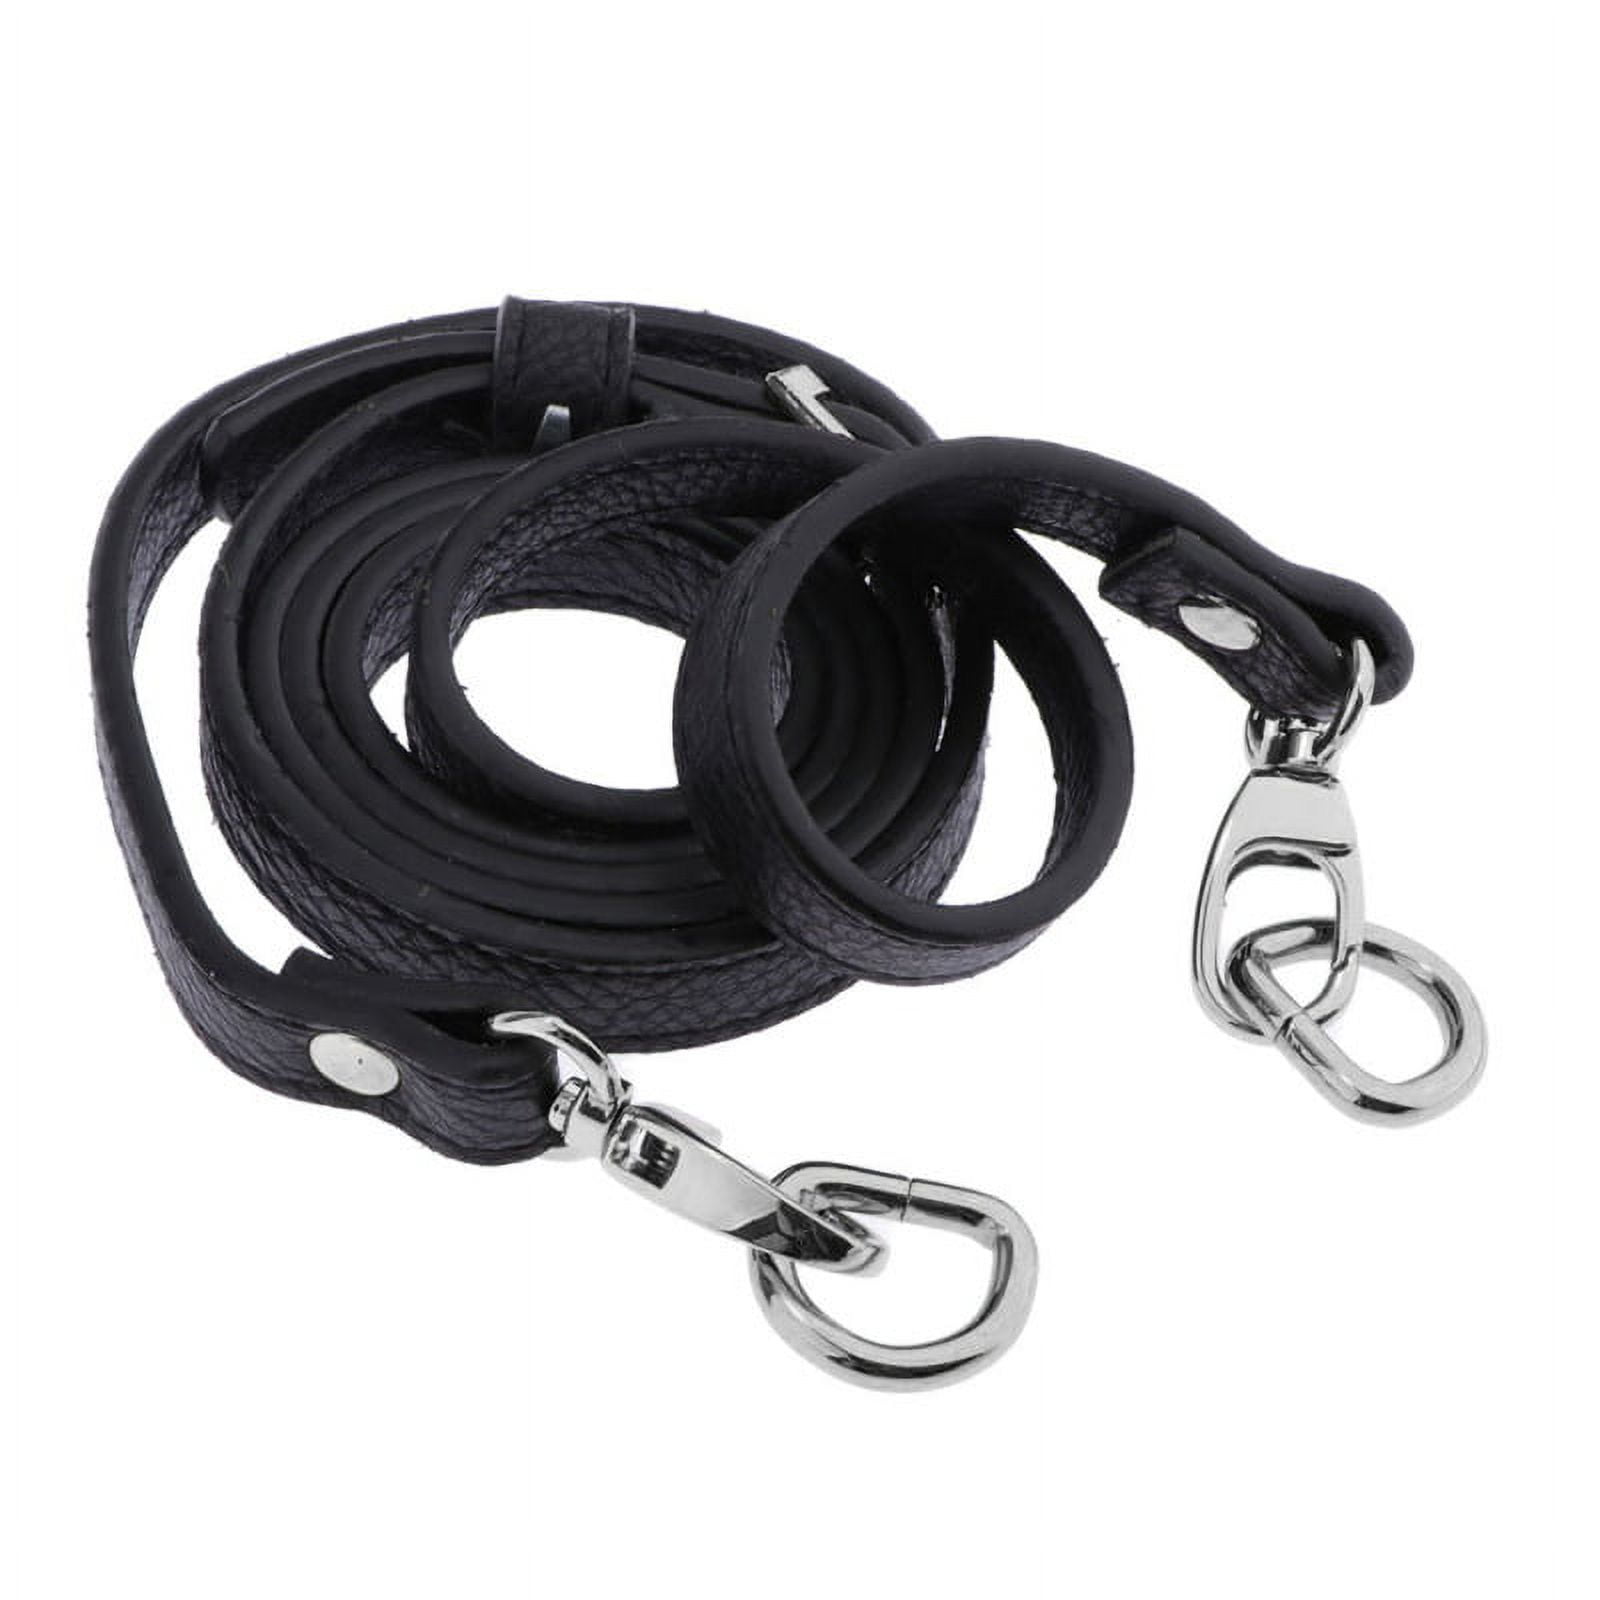 Dropship Black Replacement Adjustable Bag Strap Wide Crossbody Shoulder  Strap Messenger Bag Purse Handbag Belt to Sell Online at a Lower Price